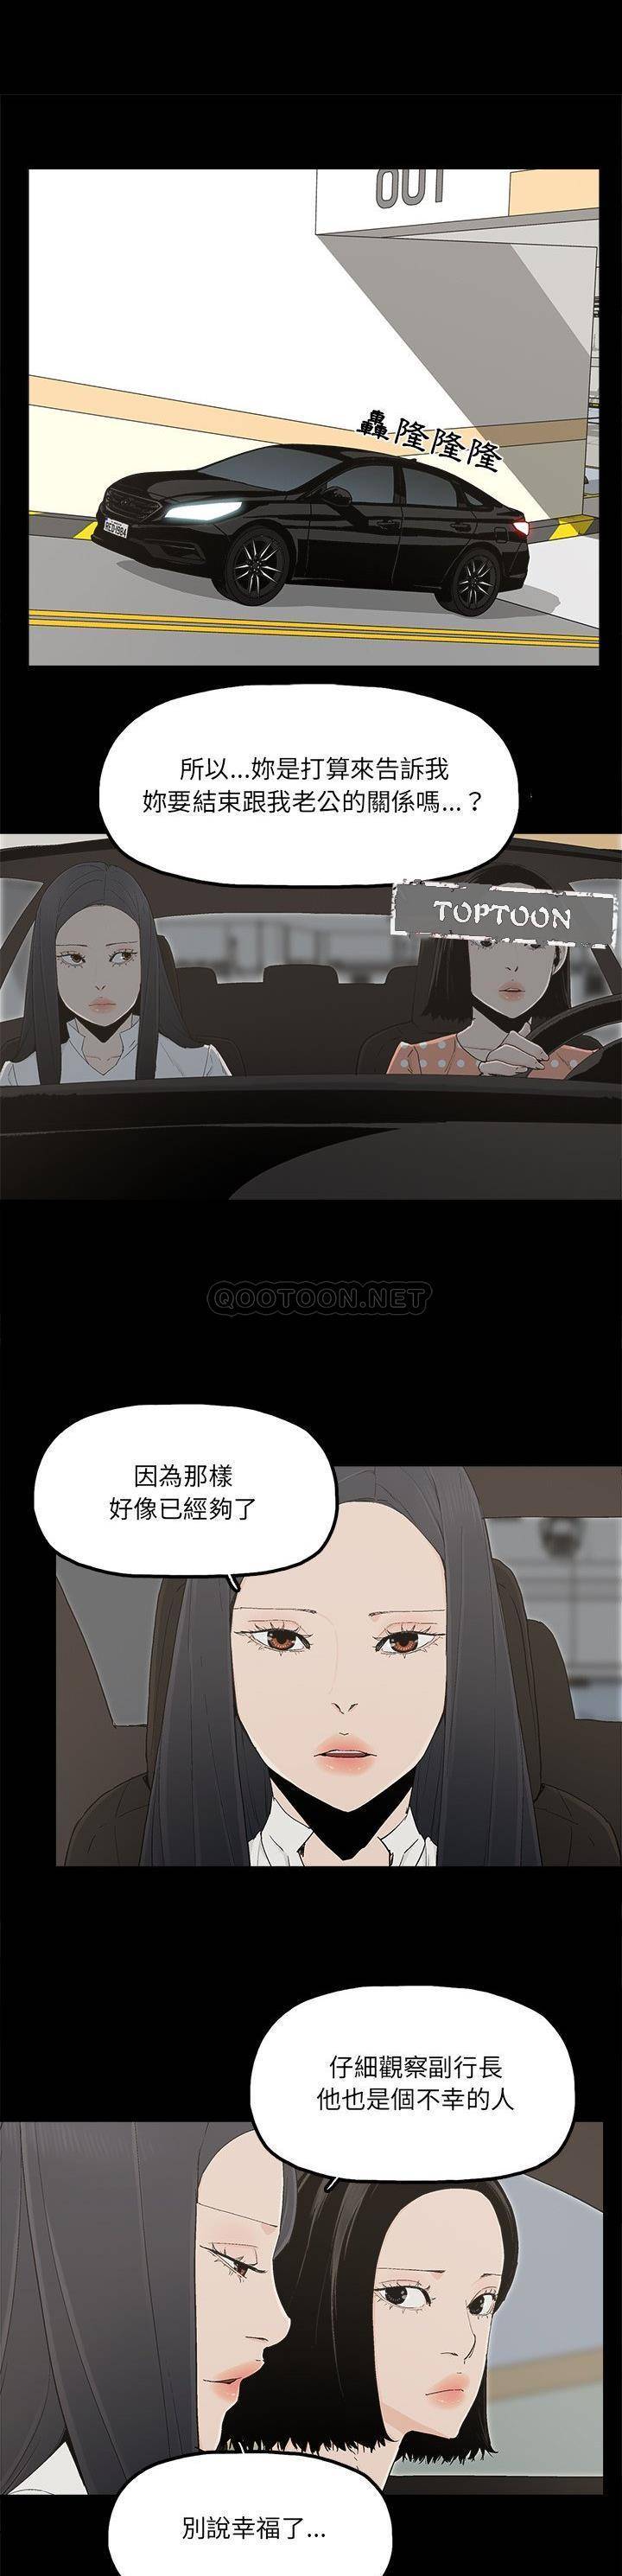 韩国污漫画 幸福 最终话 1